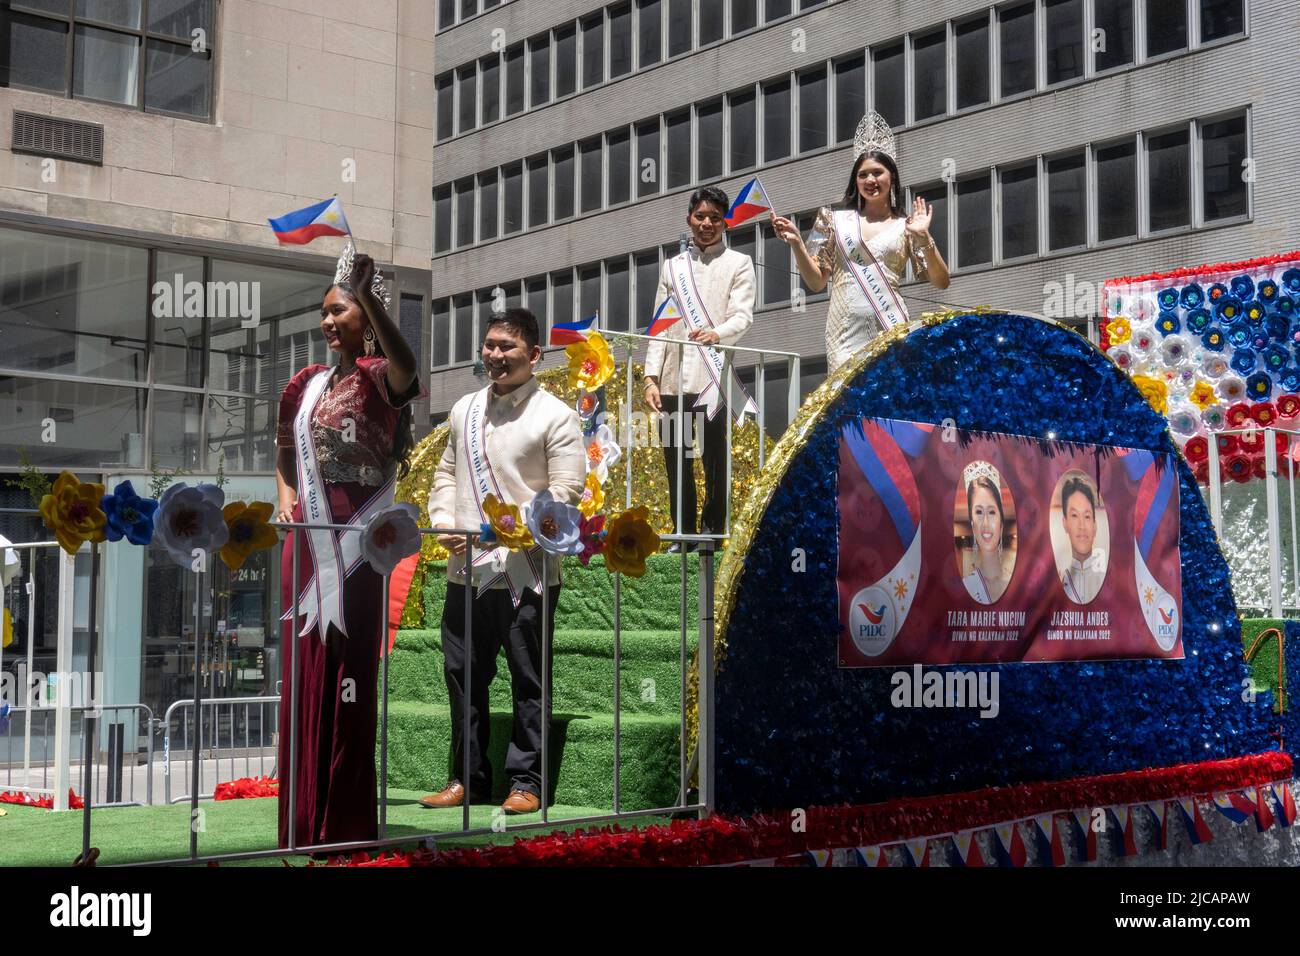 Défilé de jour de l'indépendance des Philippines aux Etats-Unis a lieu chaque année à Manhattan, New York City Banque D'Images